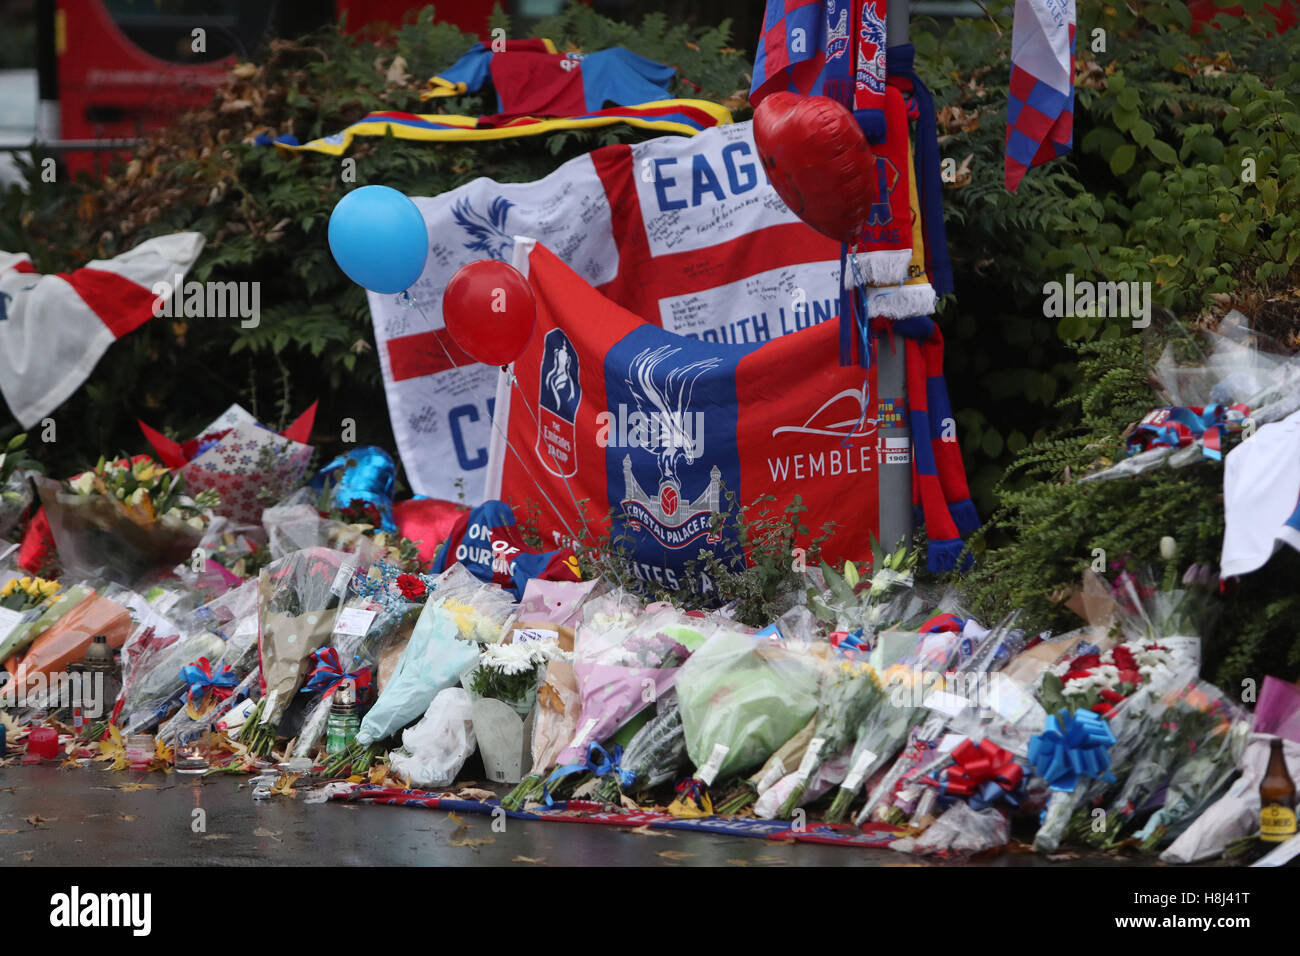 Omaggi floreali e Crystal Palace football colori a sinistra vicino alla scena dove un tram, precipitò uccidendo 7 persone a Croydon, a sud di Londra. Foto Stock